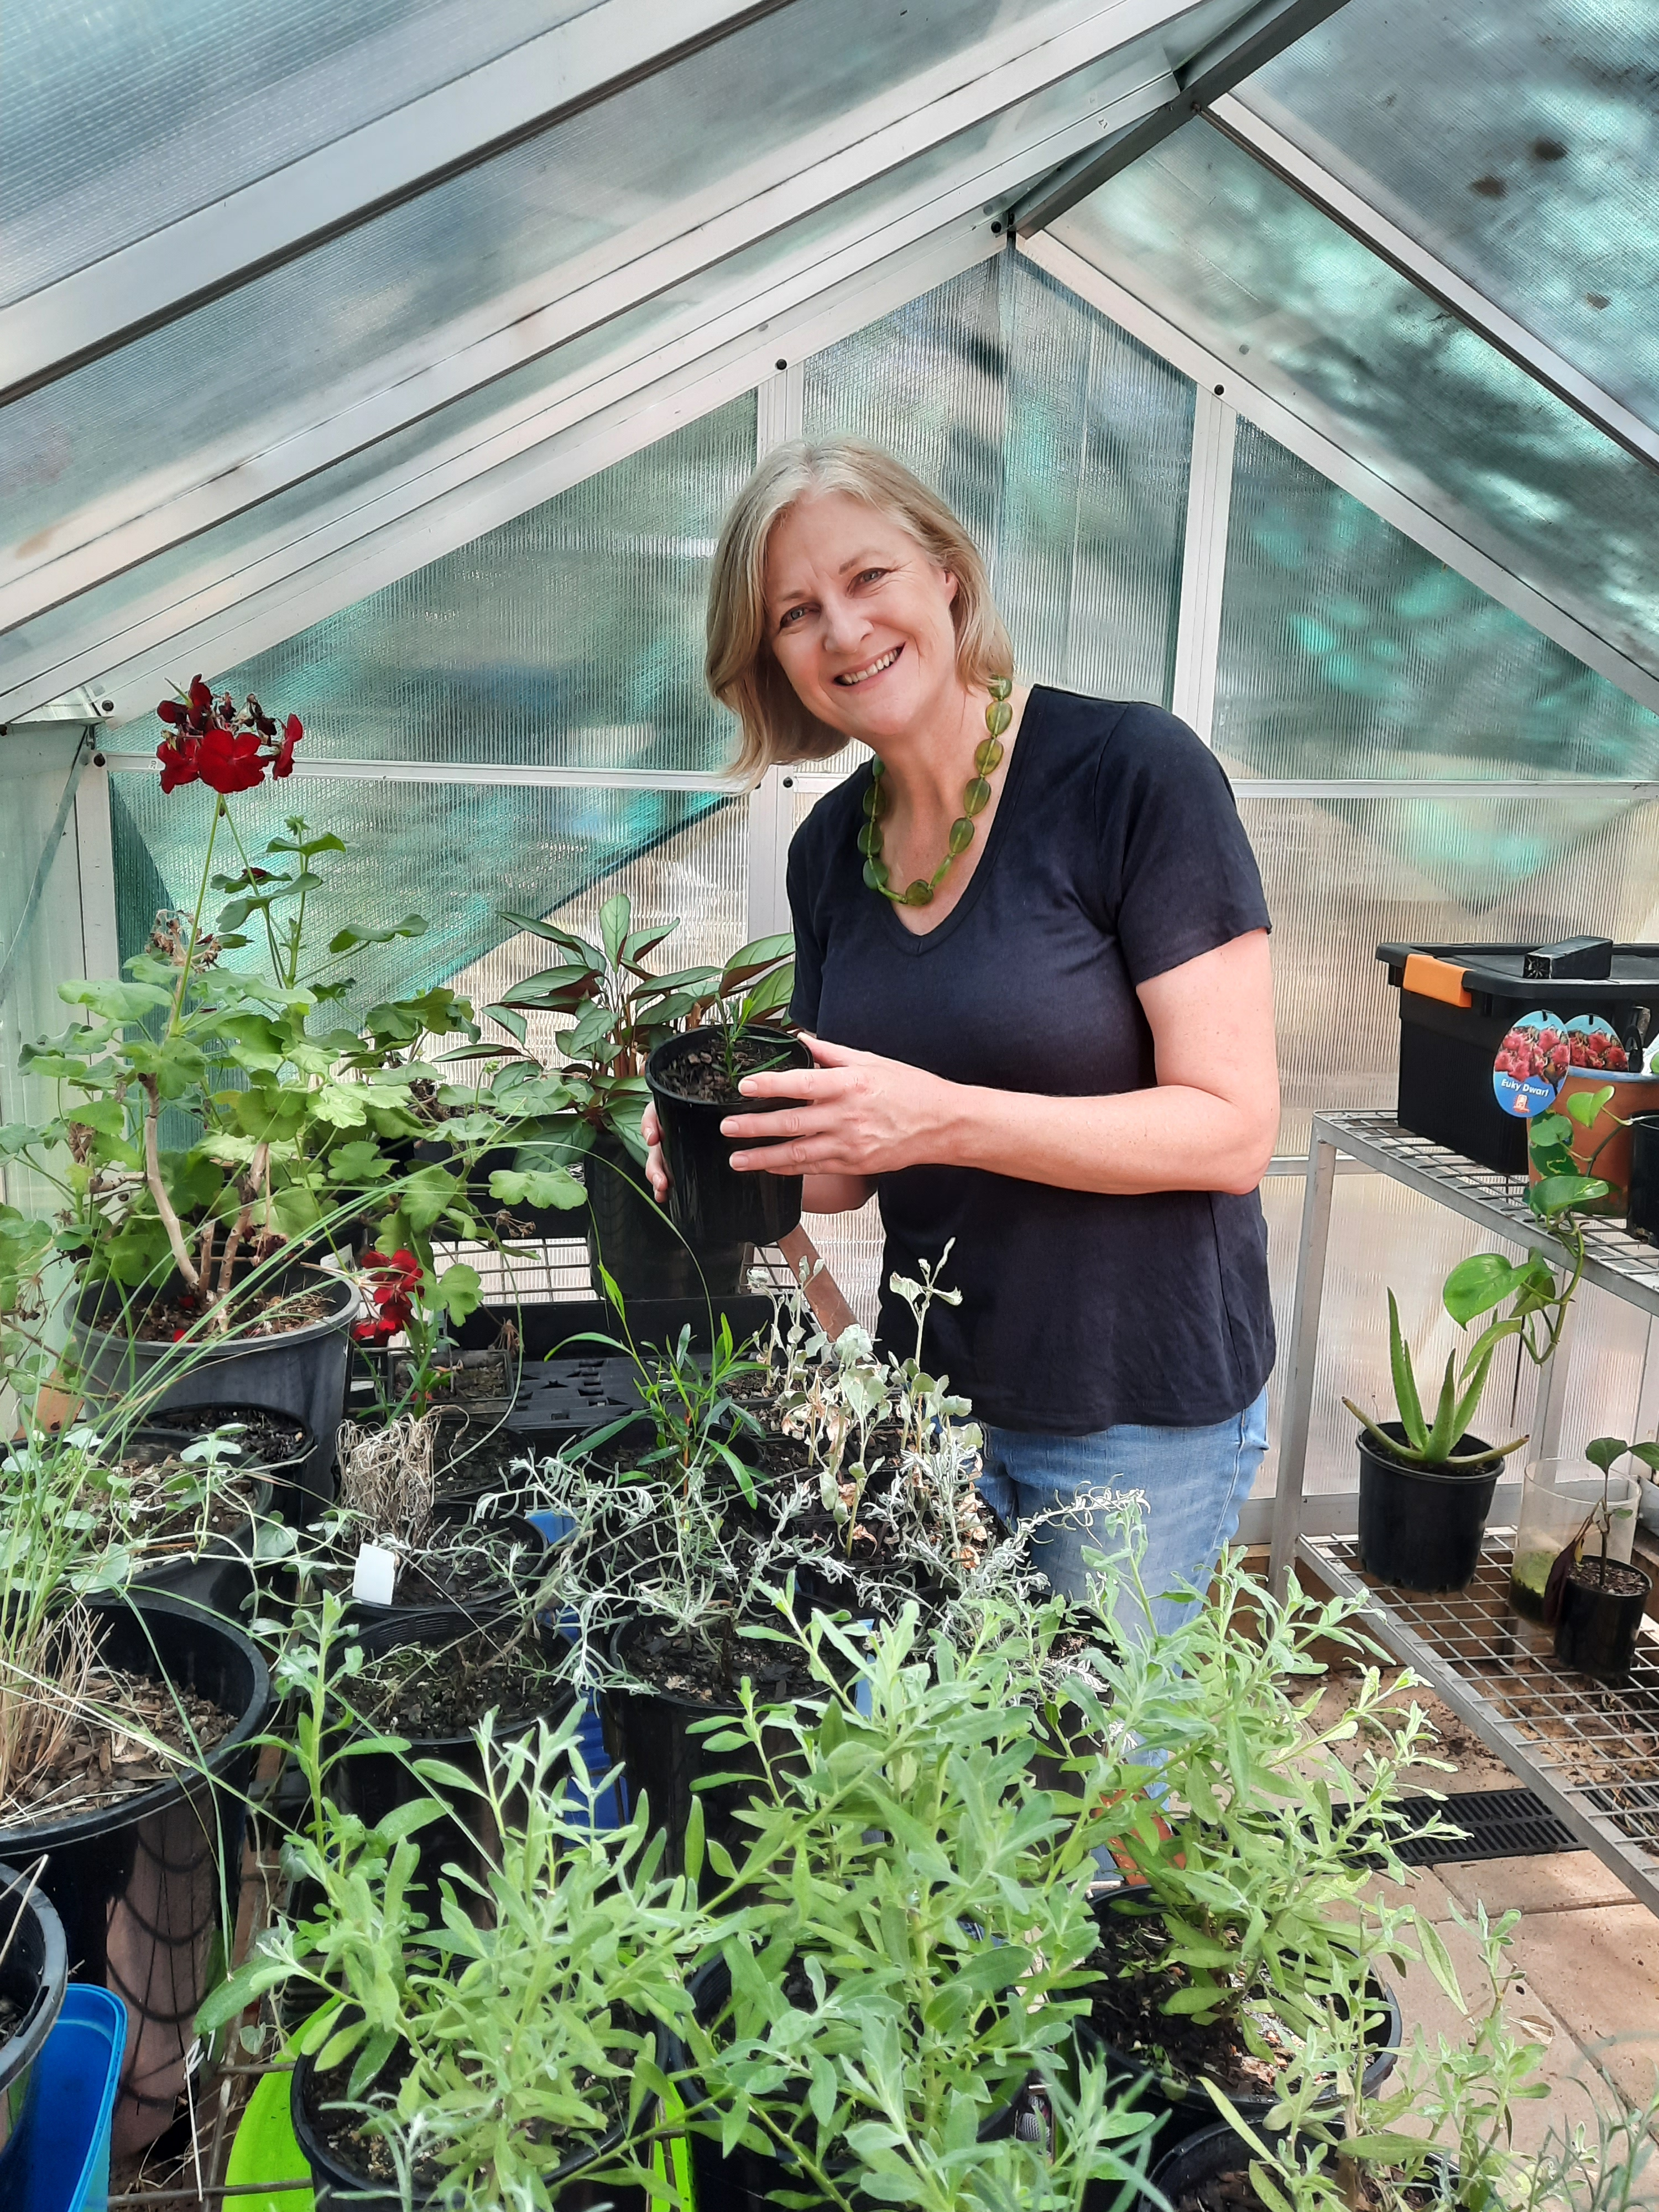 Women in greenhouse propagating plants